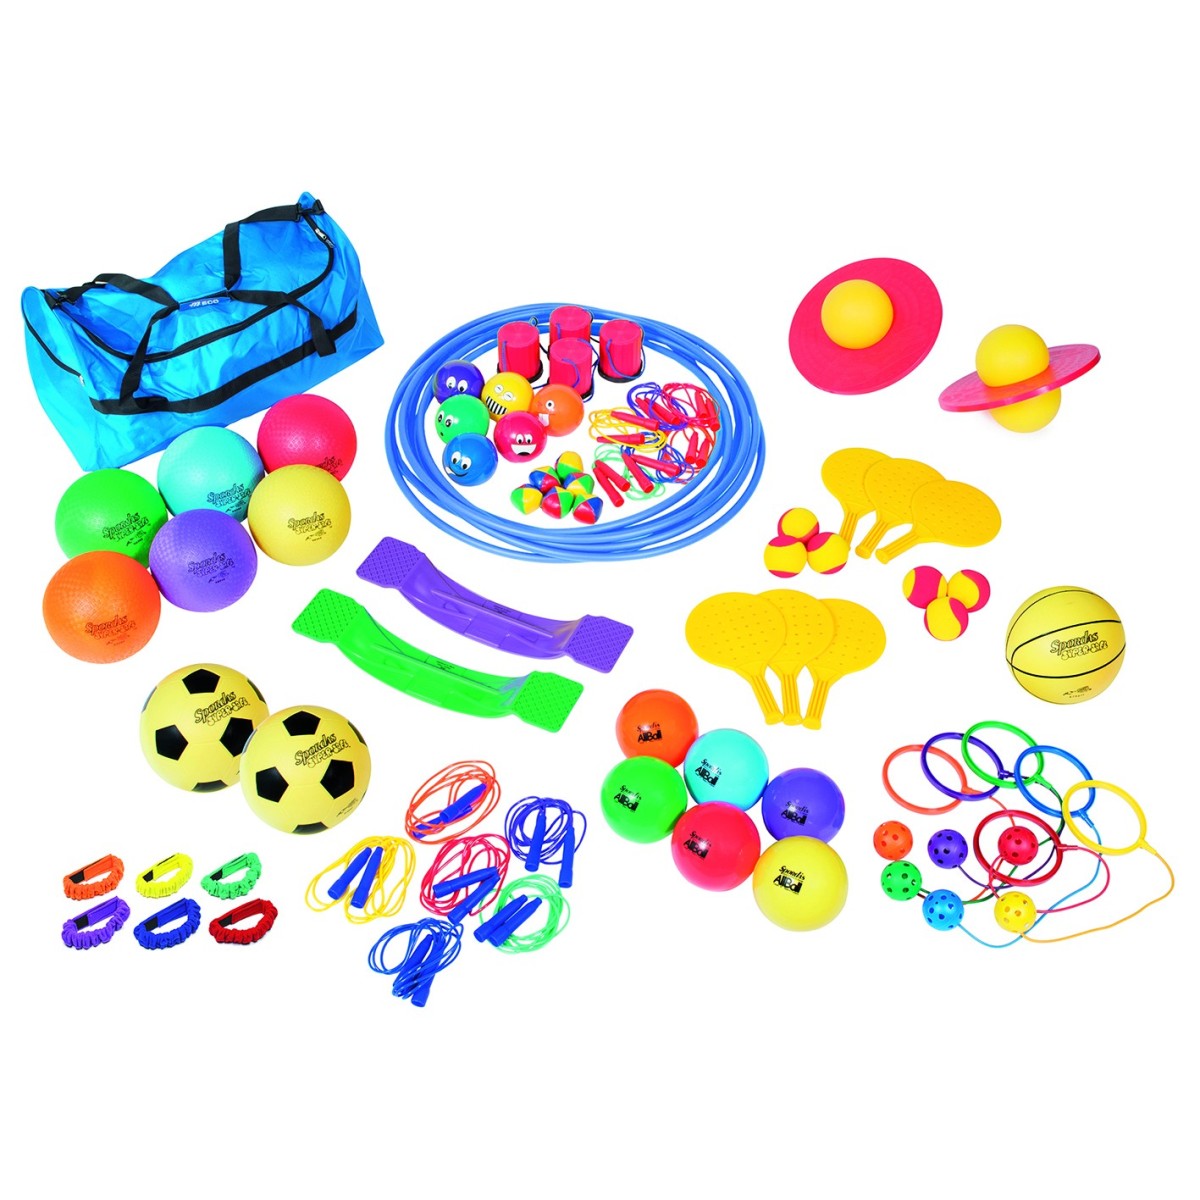 Boutique de kits de jeux récréatifs, matériel de sport scolaire enfant